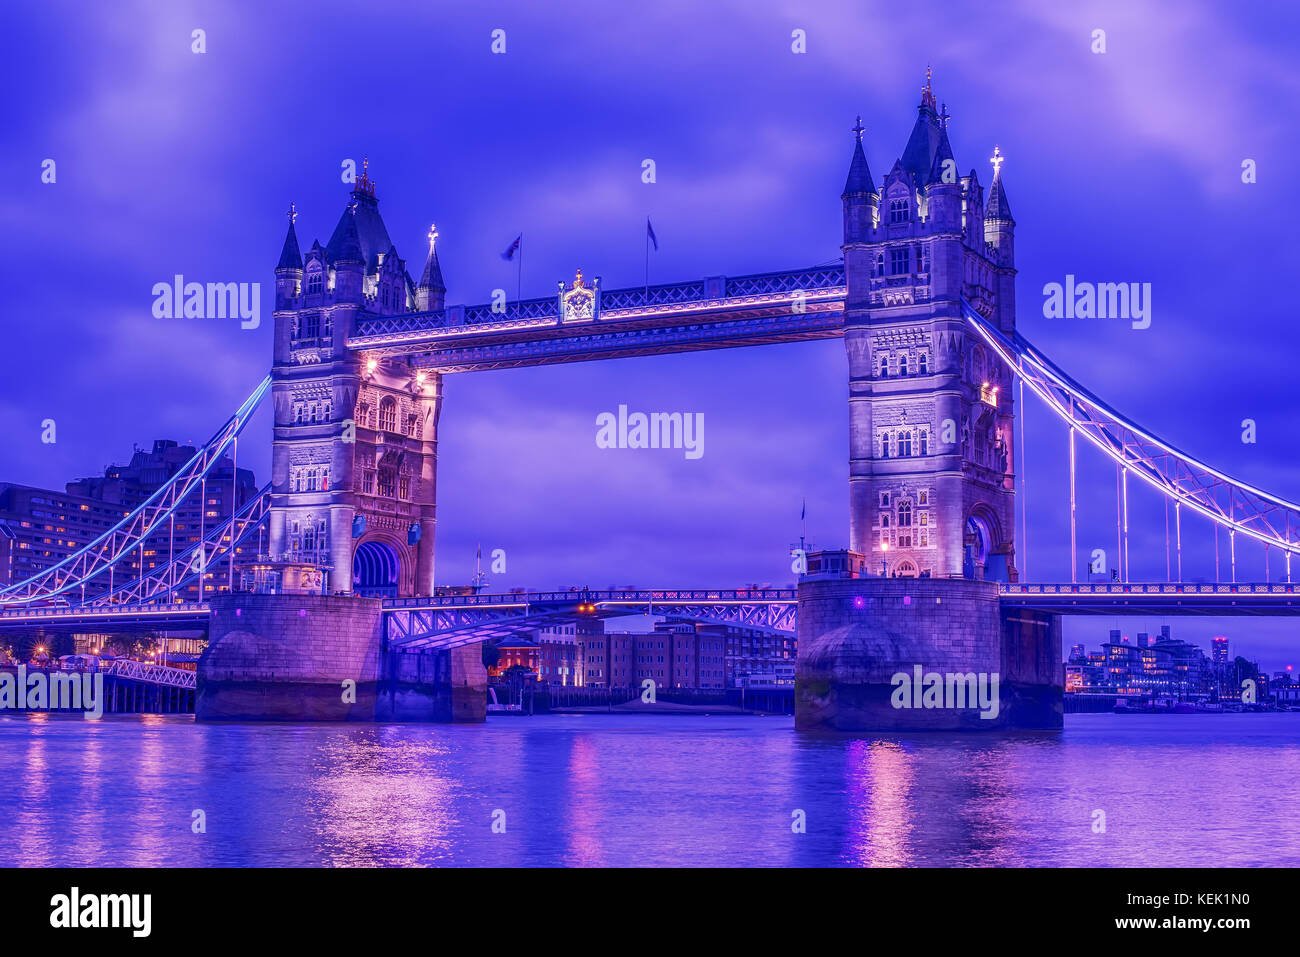 Londres, Royaume-Uni : Tower bridge sur la tamise Banque D'Images